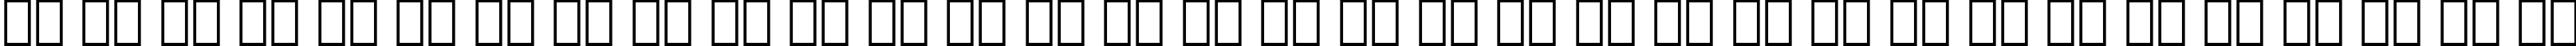 Пример написания русского алфавита шрифтом Zurich Bold BT